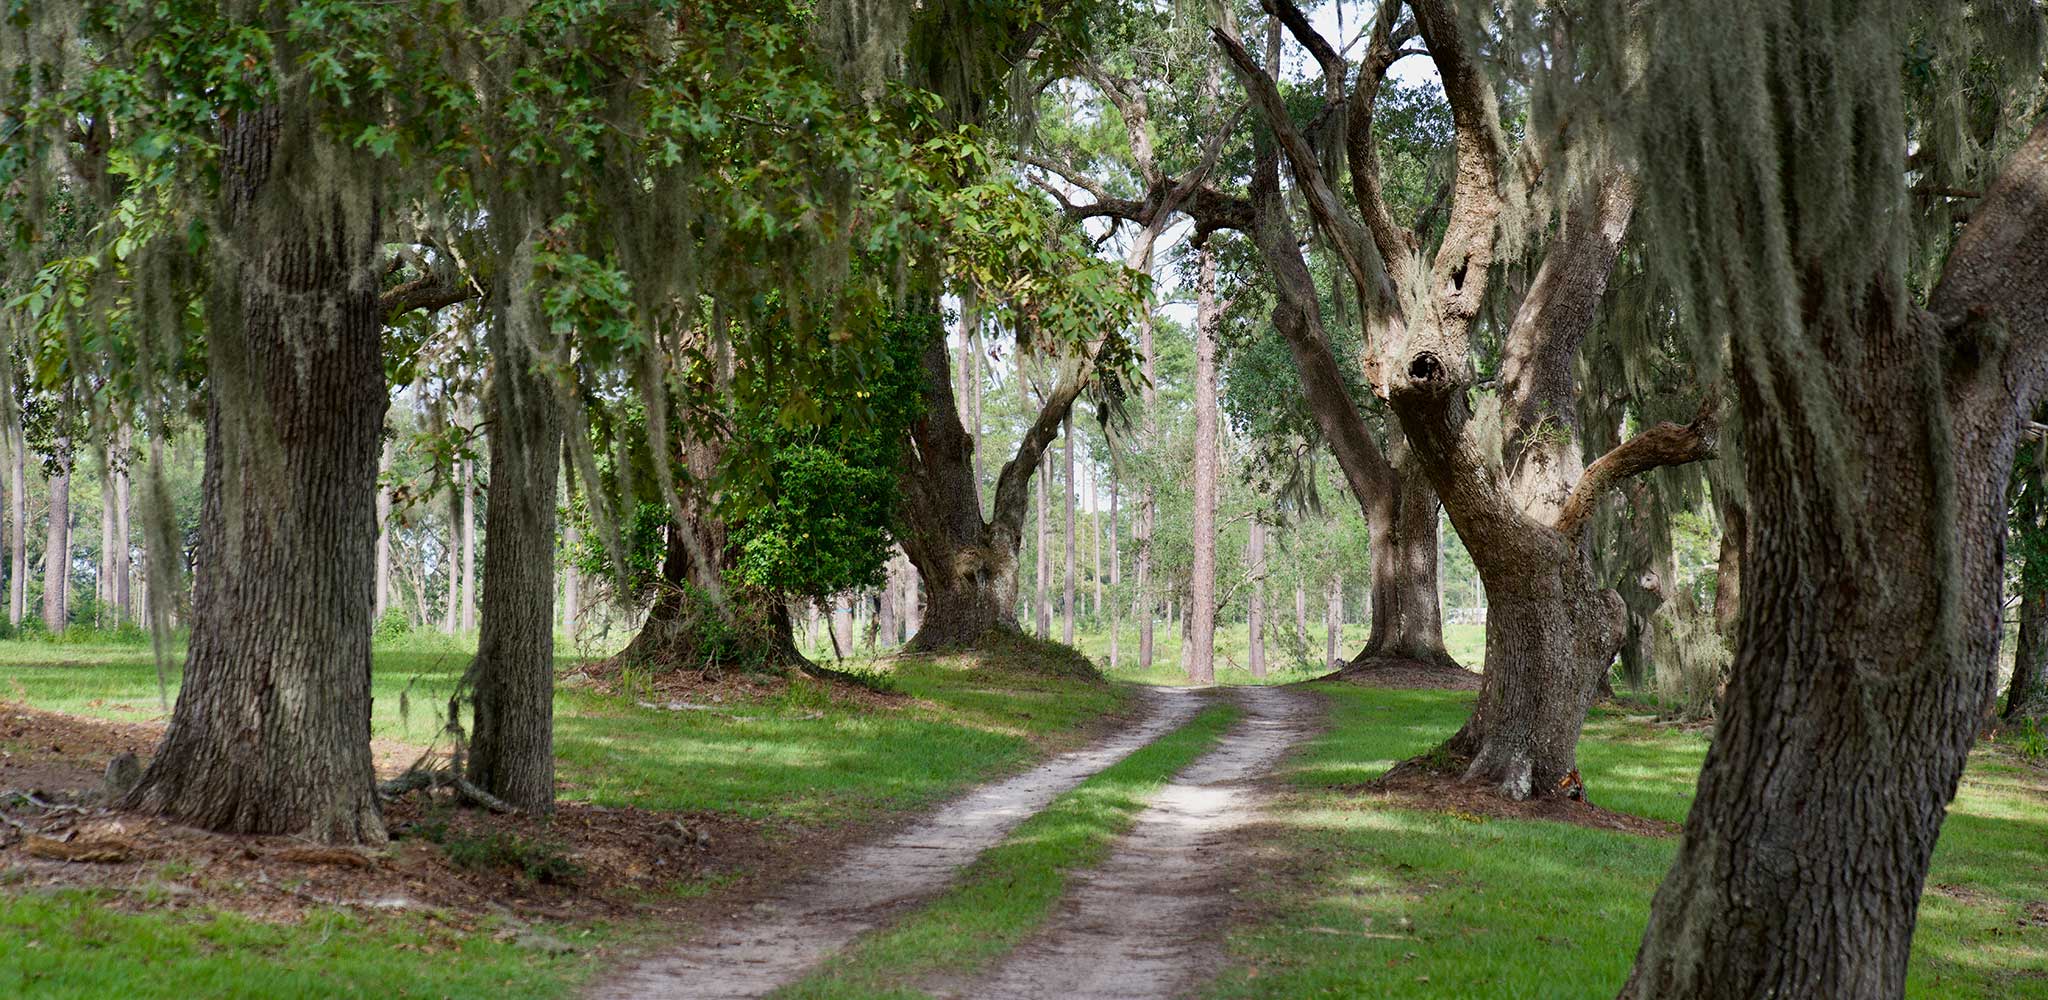 A gravel road between oak trees.